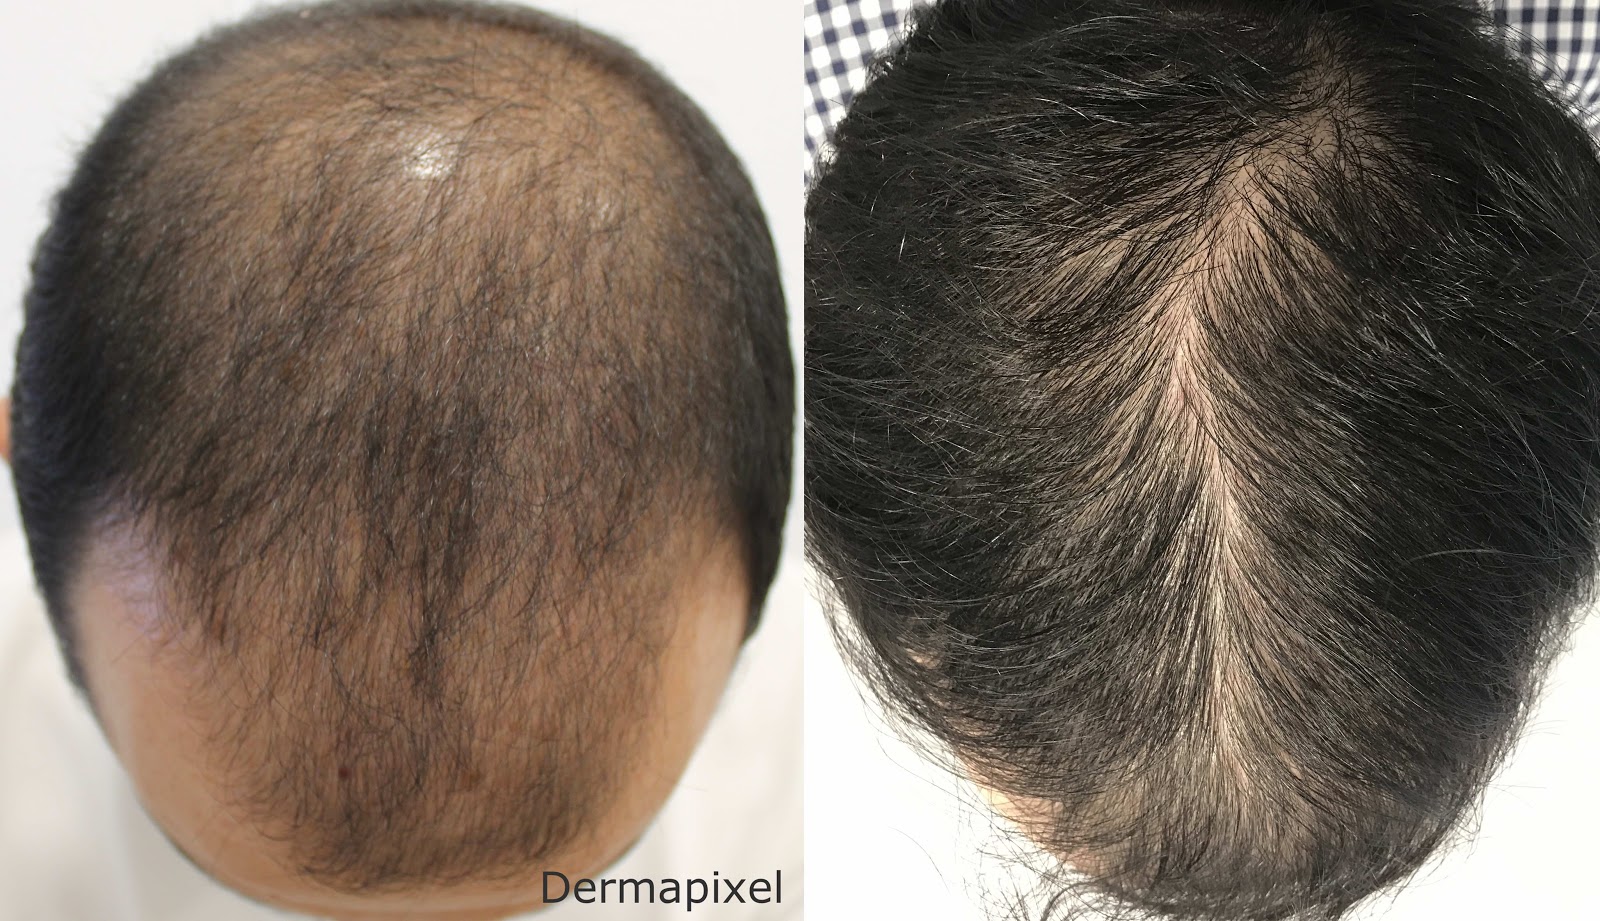 Alopecia androgénica: El trasplante de pelo es todo